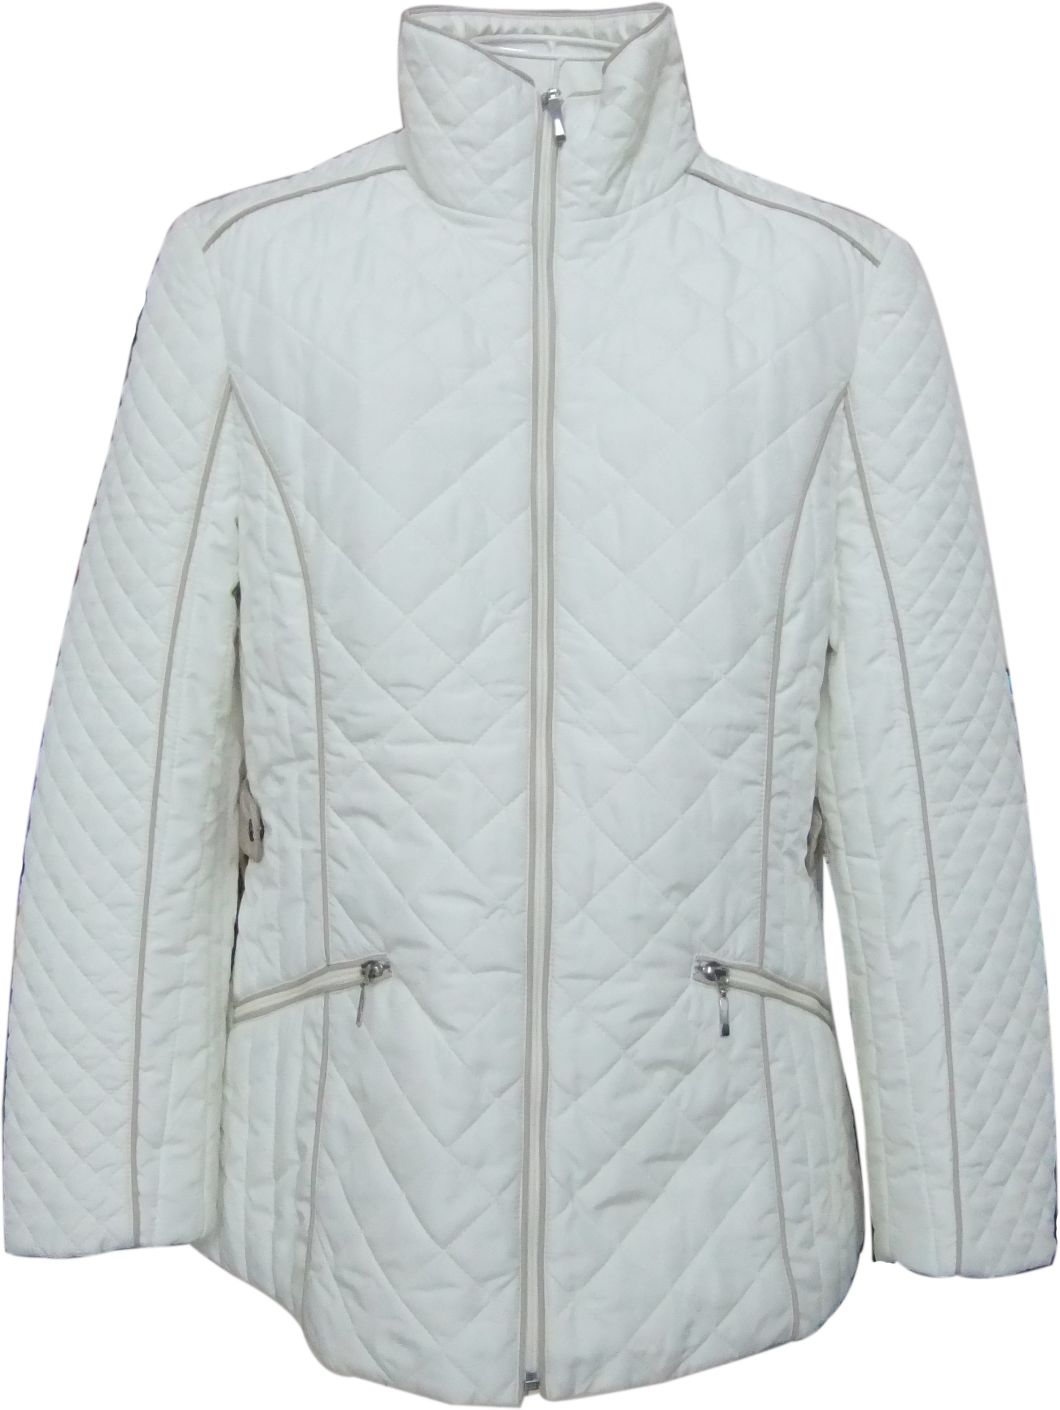 Vestuário de inverno para jaqueta de pato adulto